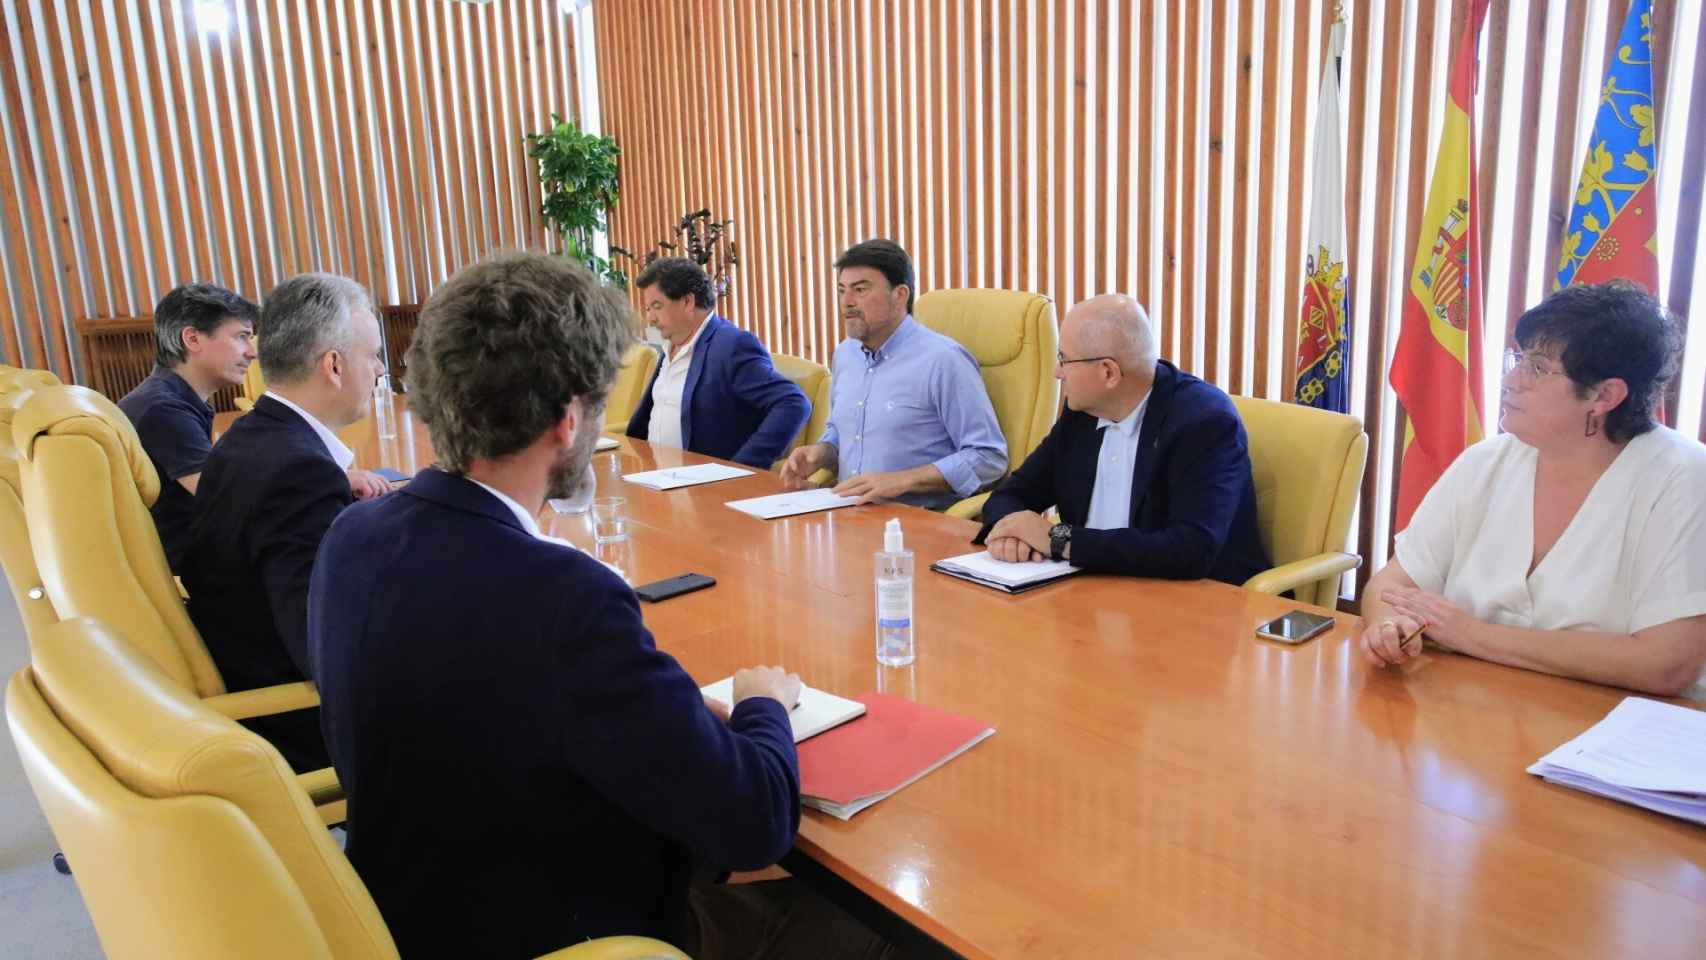 Reunión de los responsables de la Generalitat con el alcalde de Alicante y los técnicos, este lunes.